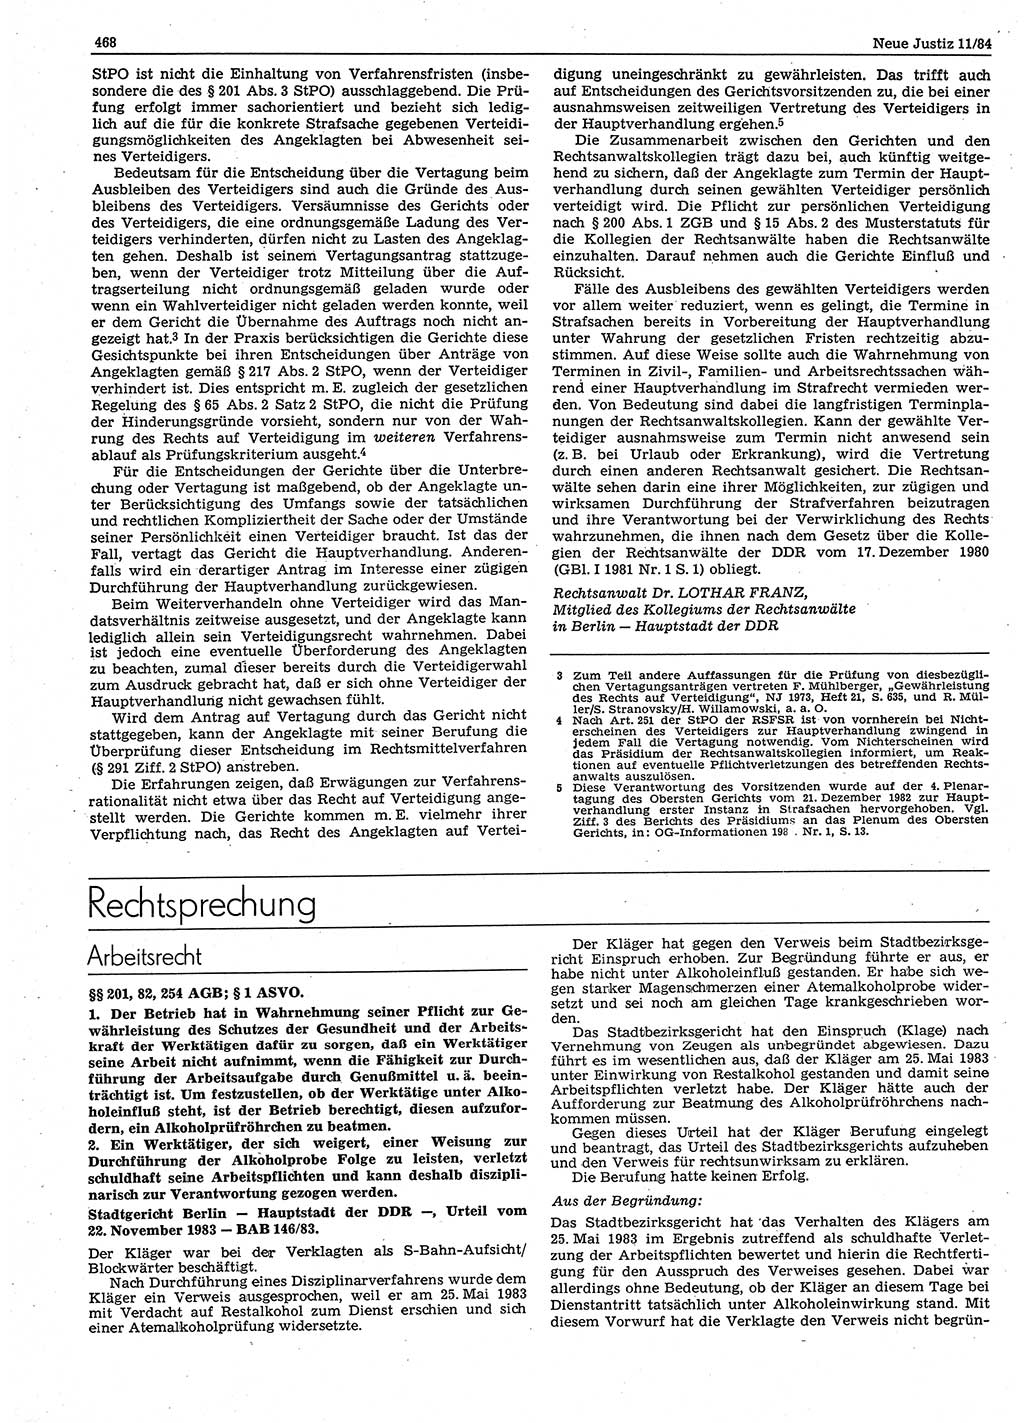 Neue Justiz (NJ), Zeitschrift für sozialistisches Recht und Gesetzlichkeit [Deutsche Demokratische Republik (DDR)], 38. Jahrgang 1984, Seite 468 (NJ DDR 1984, S. 468)